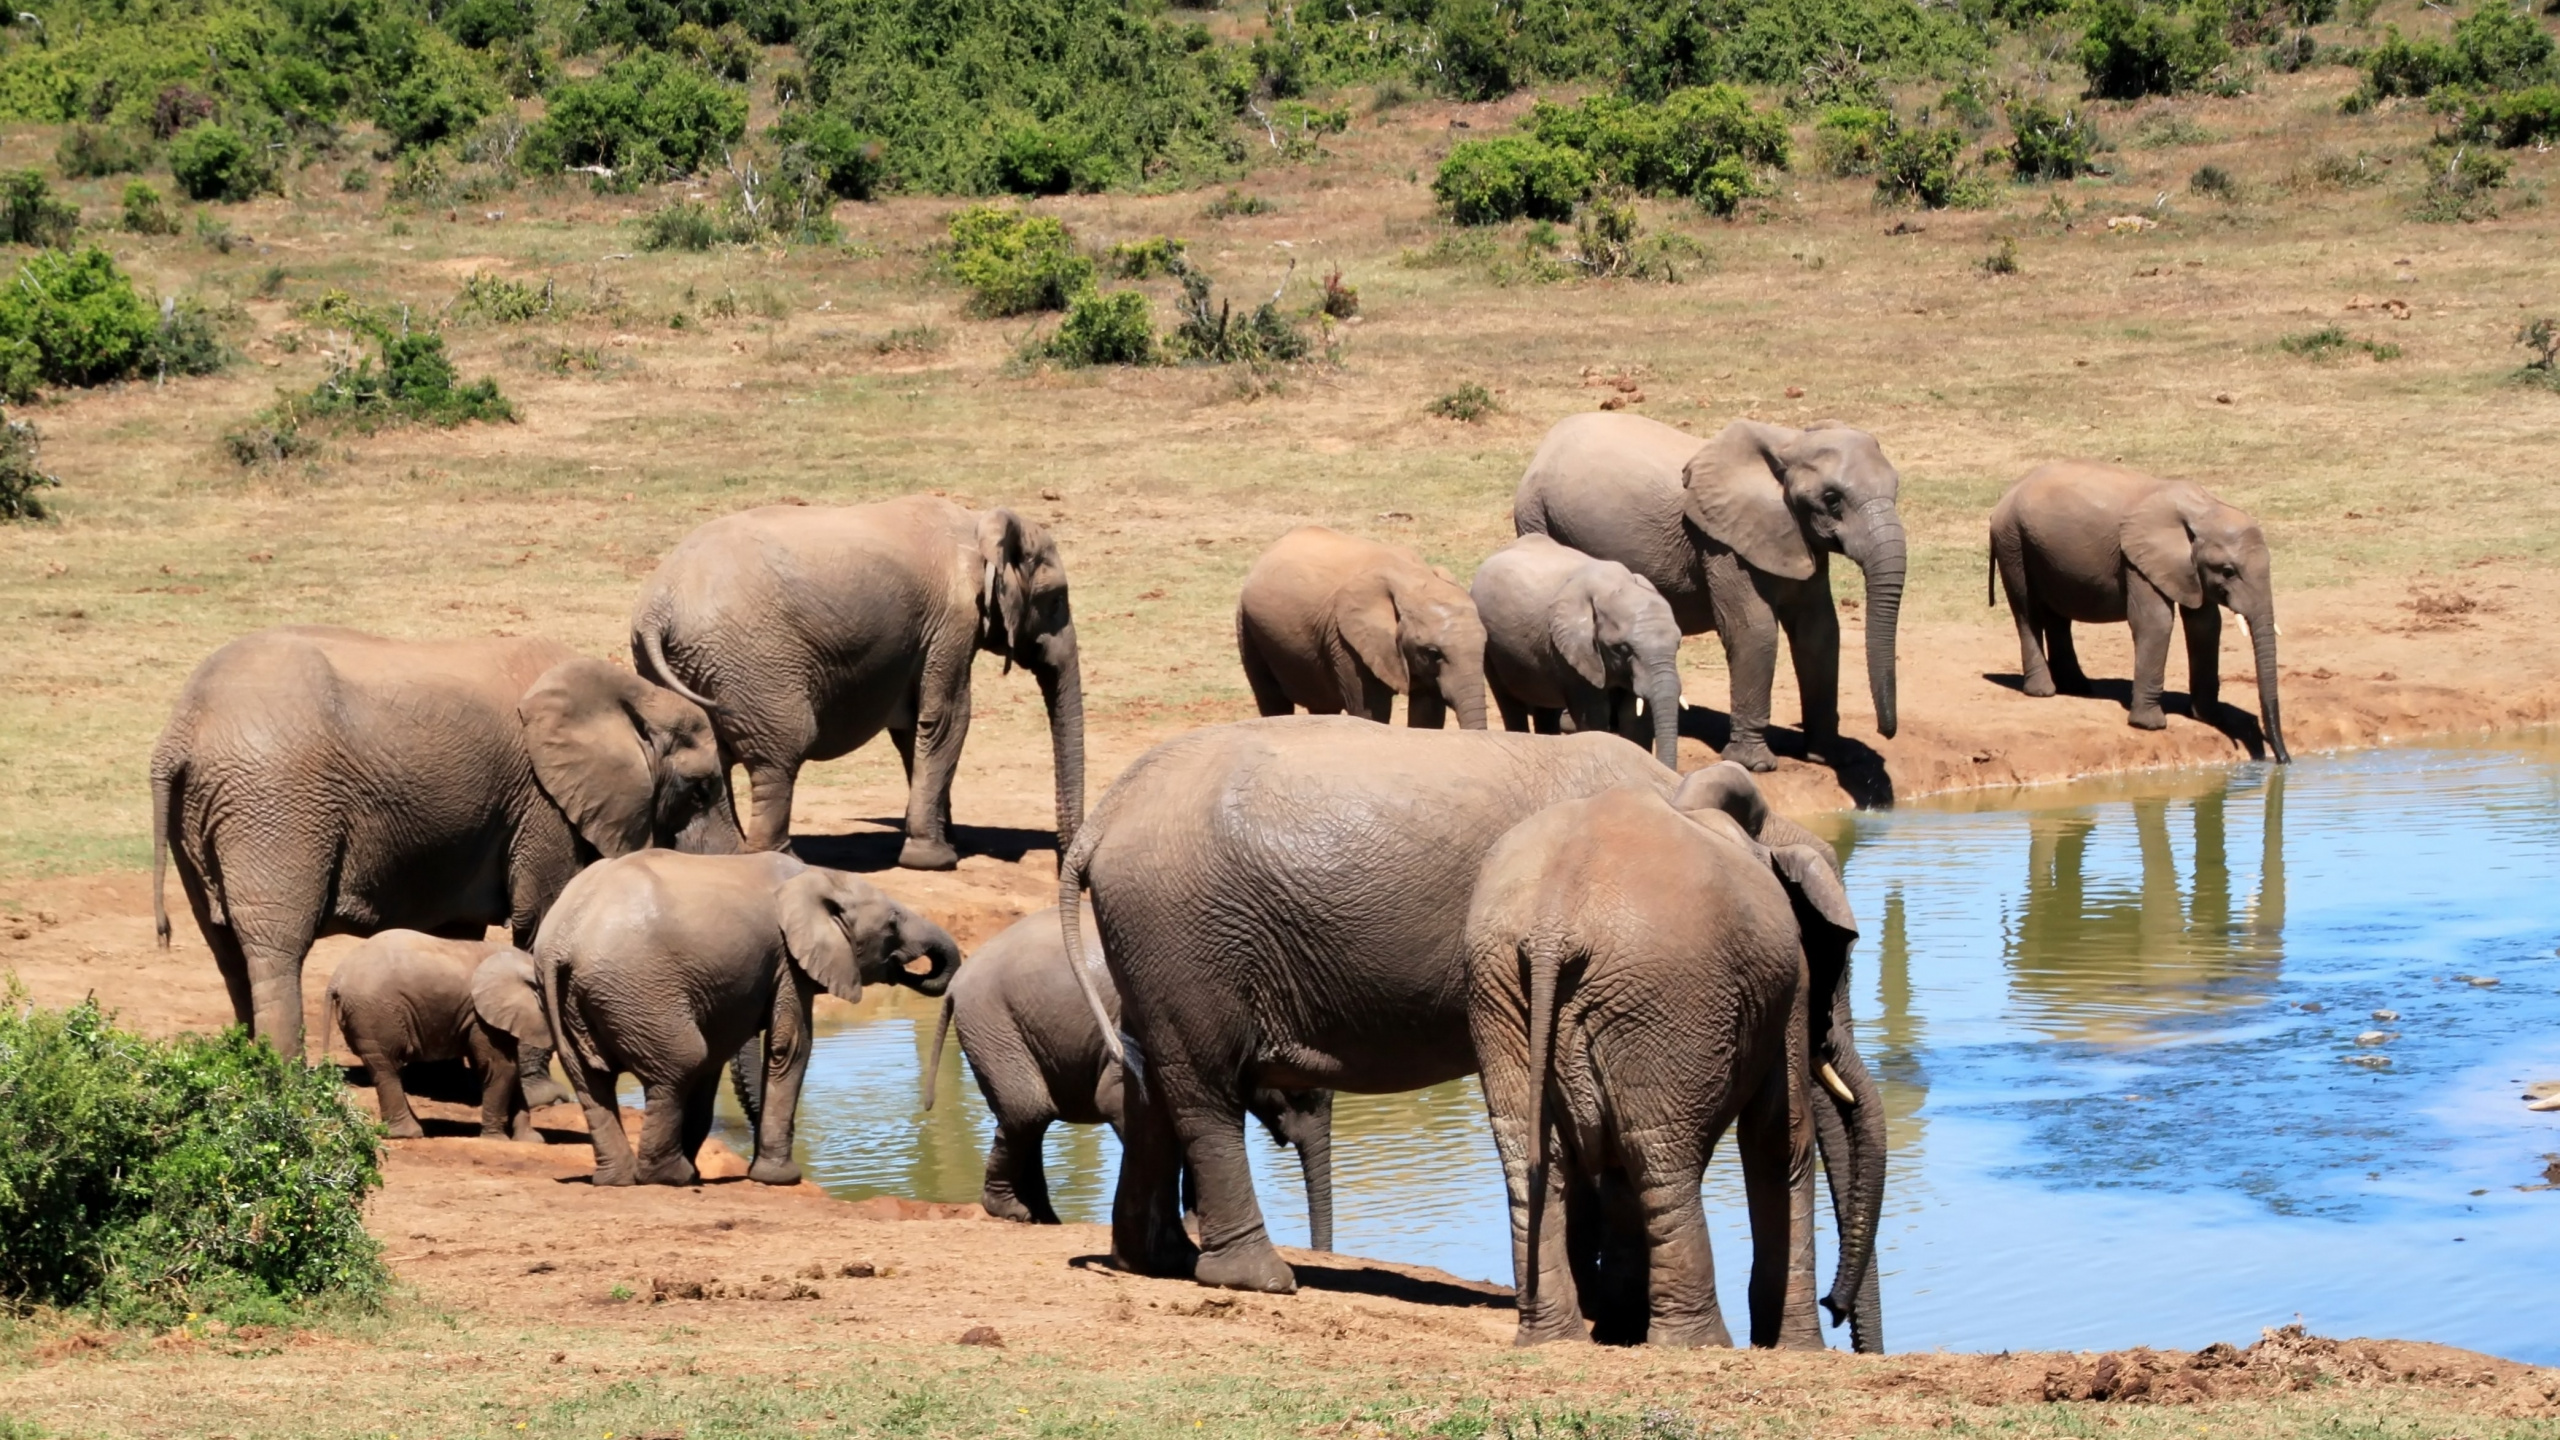 陆地动物, 野生动物, 大象和猛犸象, 牛群, 非洲象 壁纸 2560x1440 允许